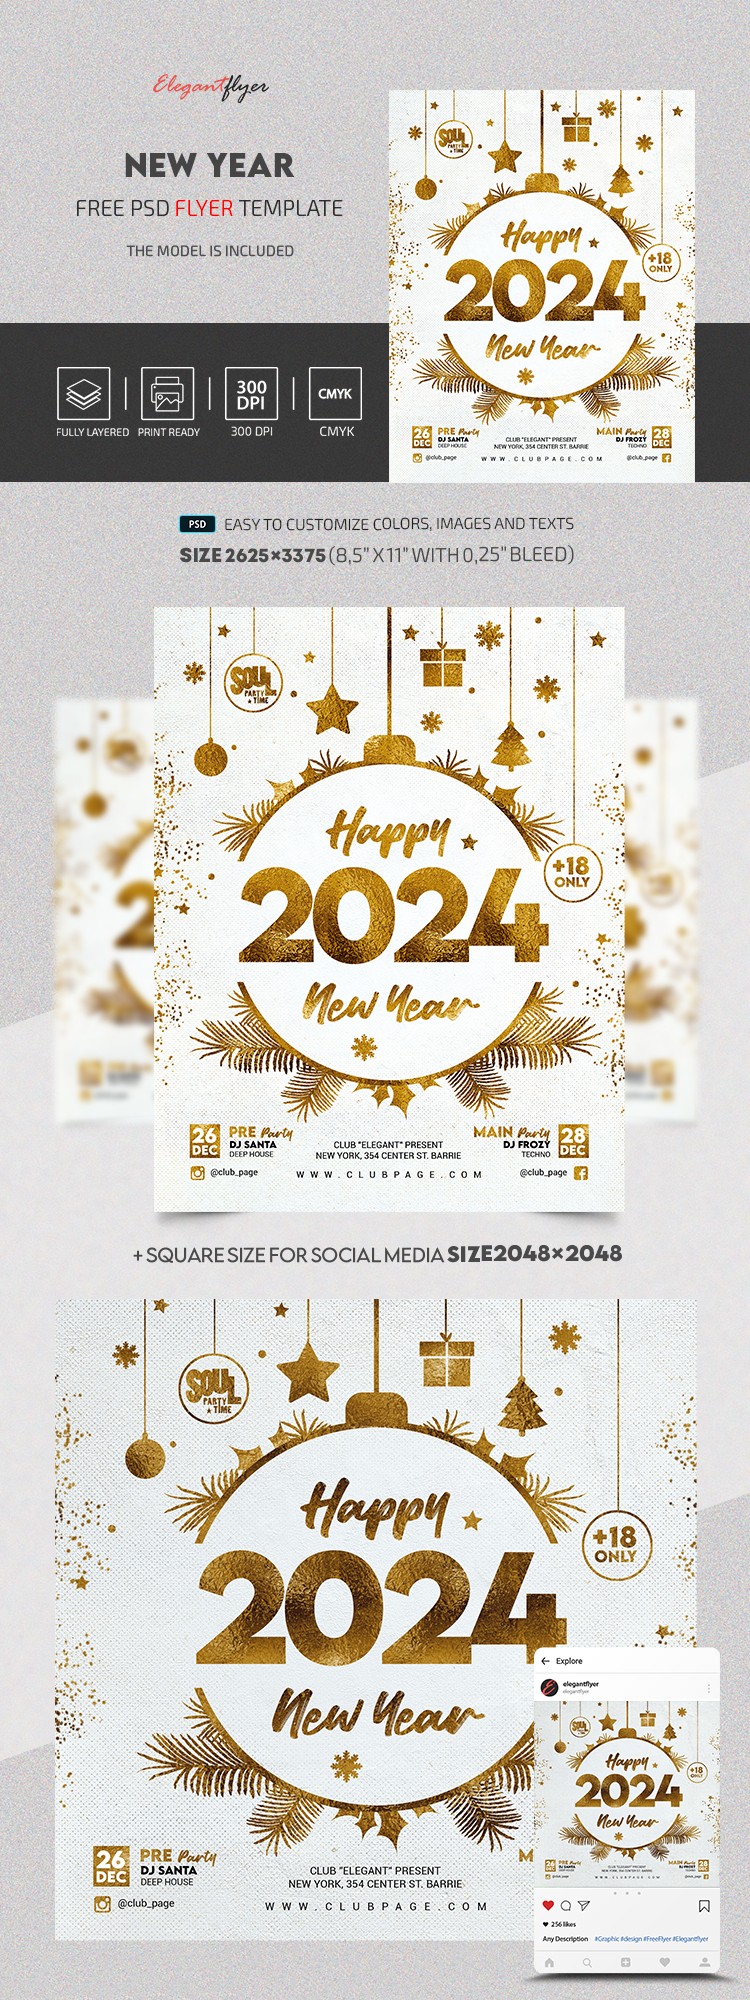 Ano Novo 2024 by ElegantFlyer